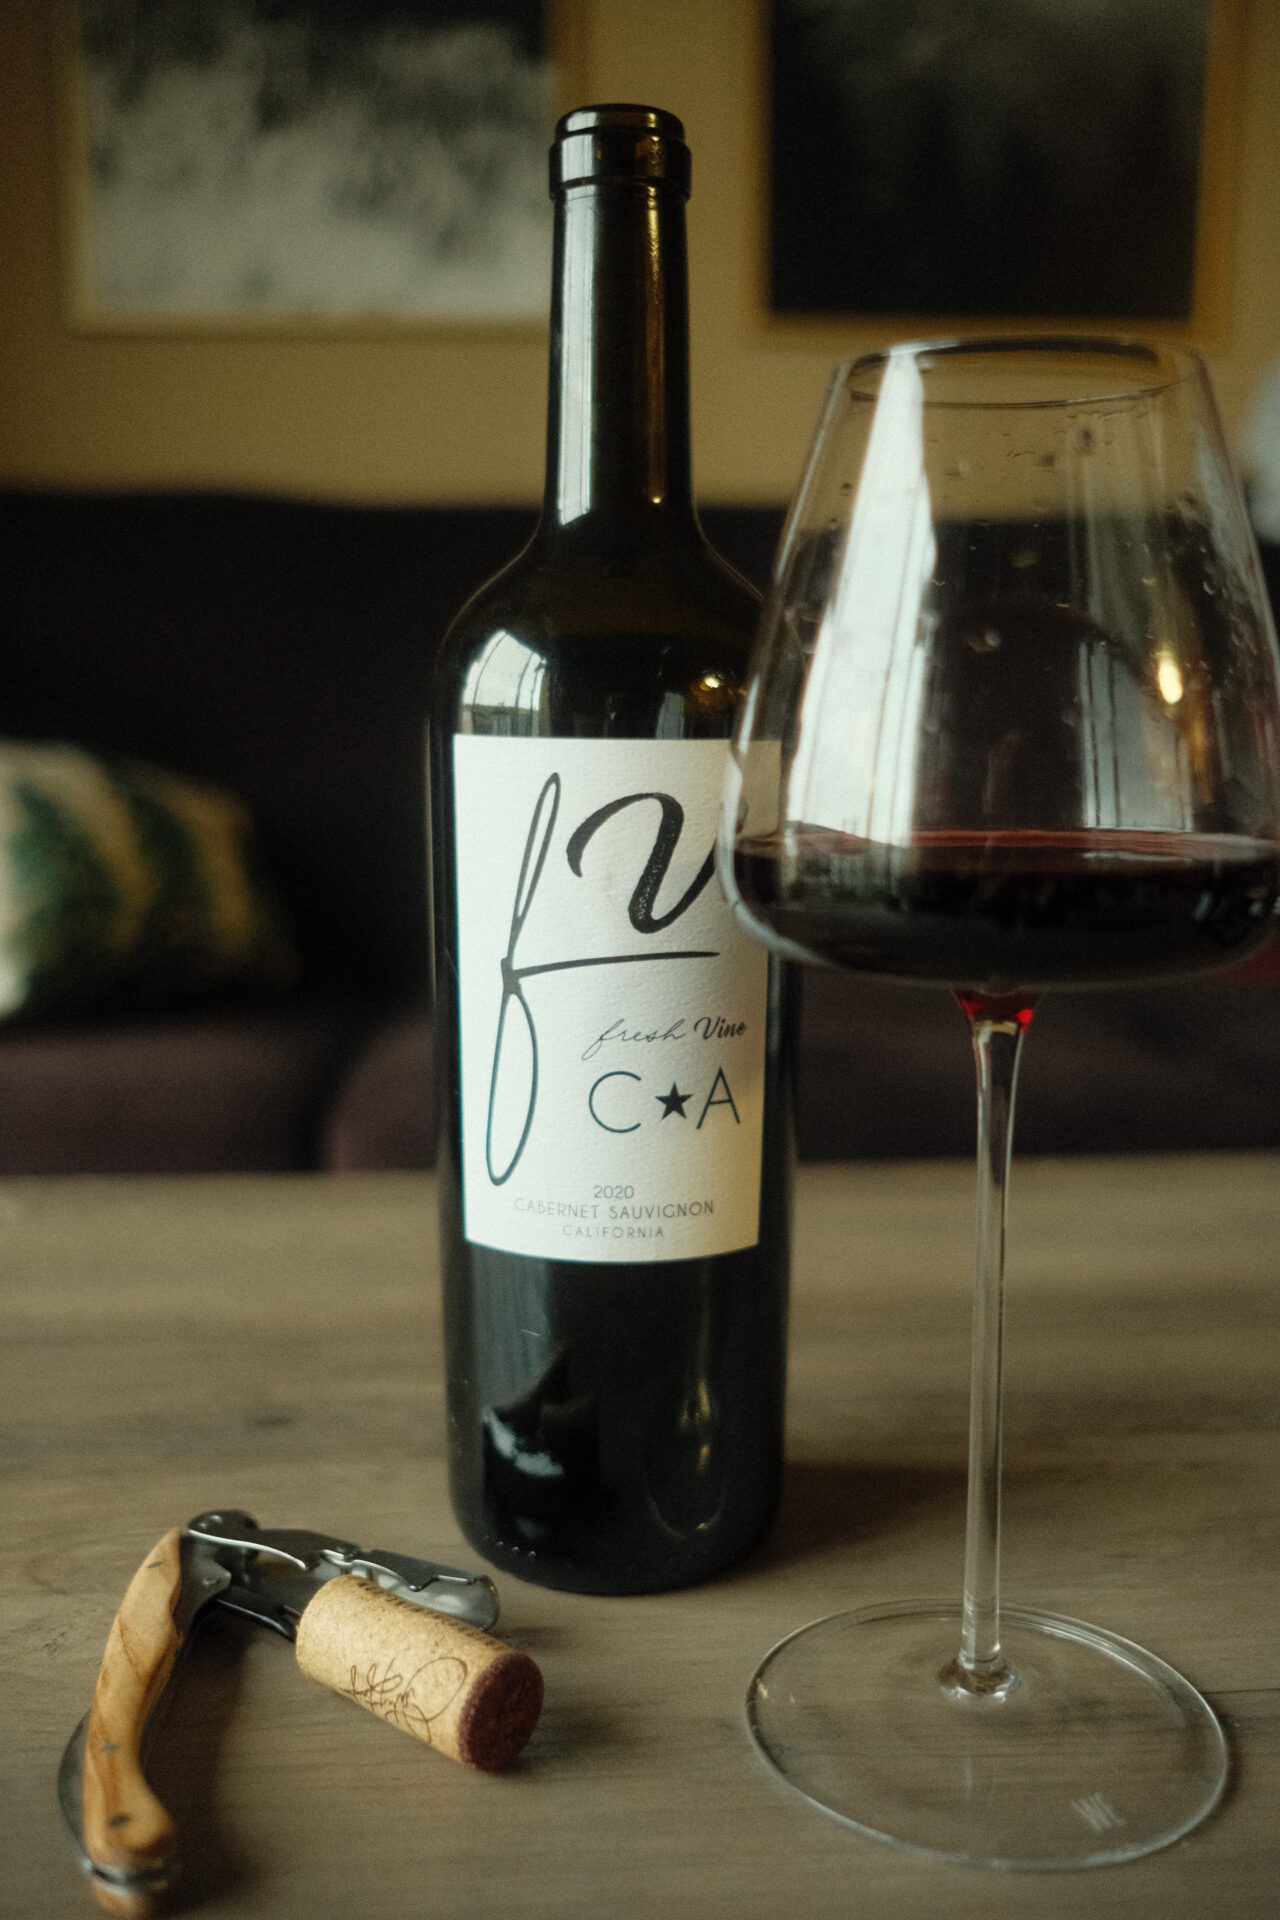 Fresh Vine Wine Cabernet Sauvignon Wine Bottle and glass with corkscrew